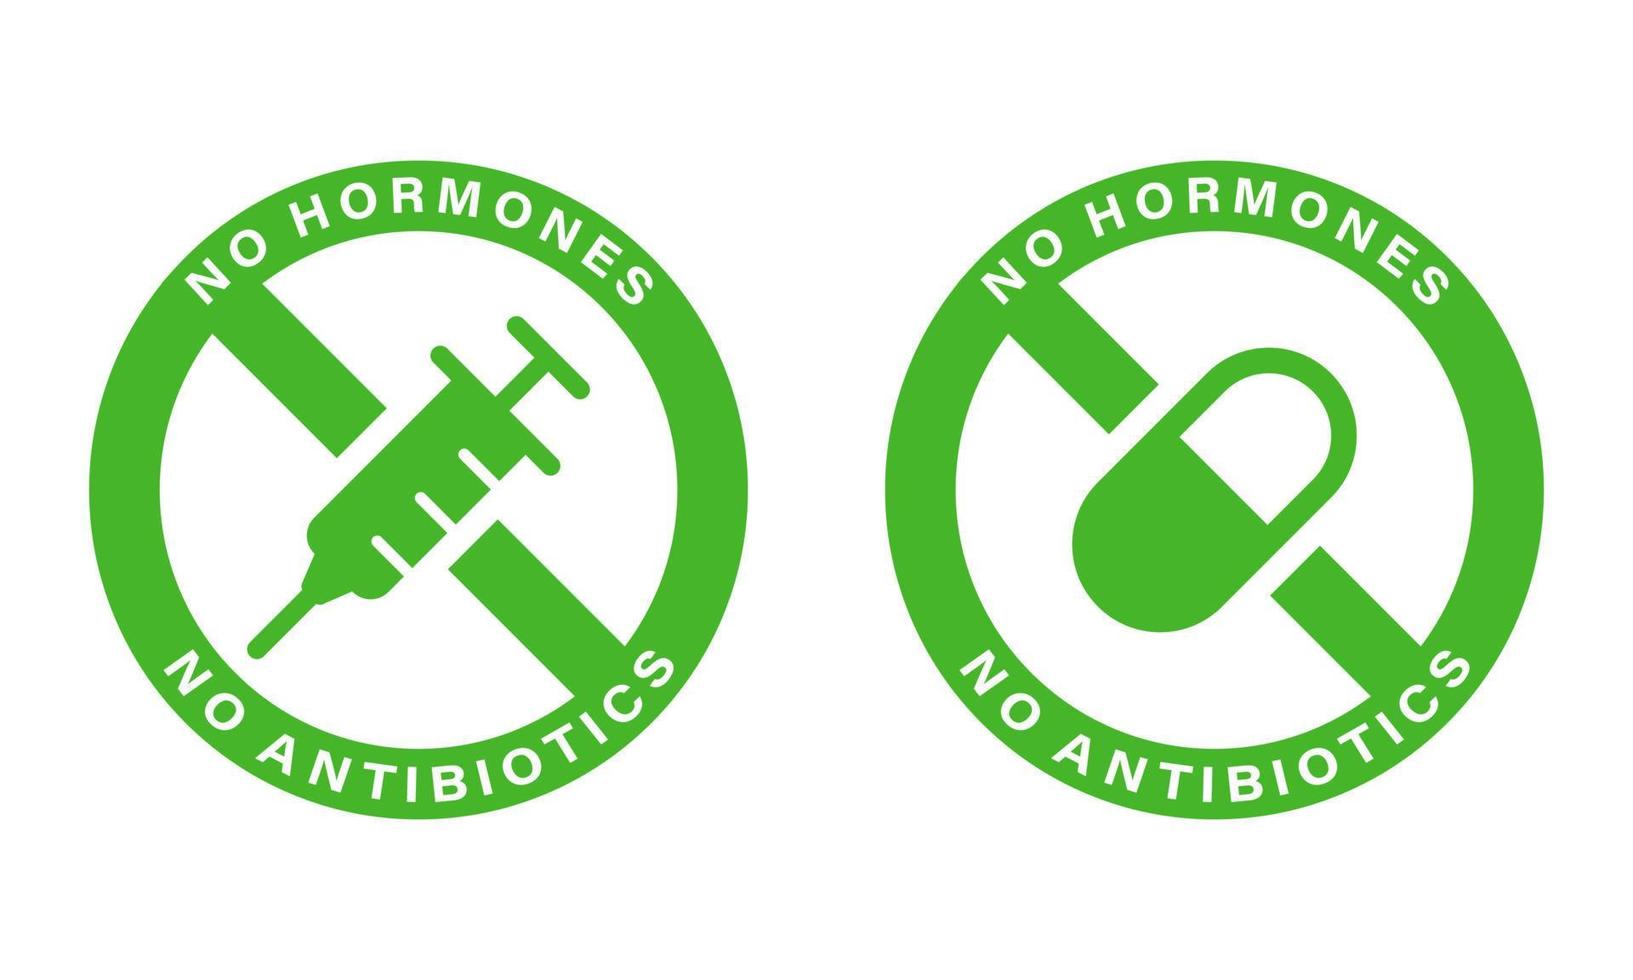 des hormones et des antibiotiques